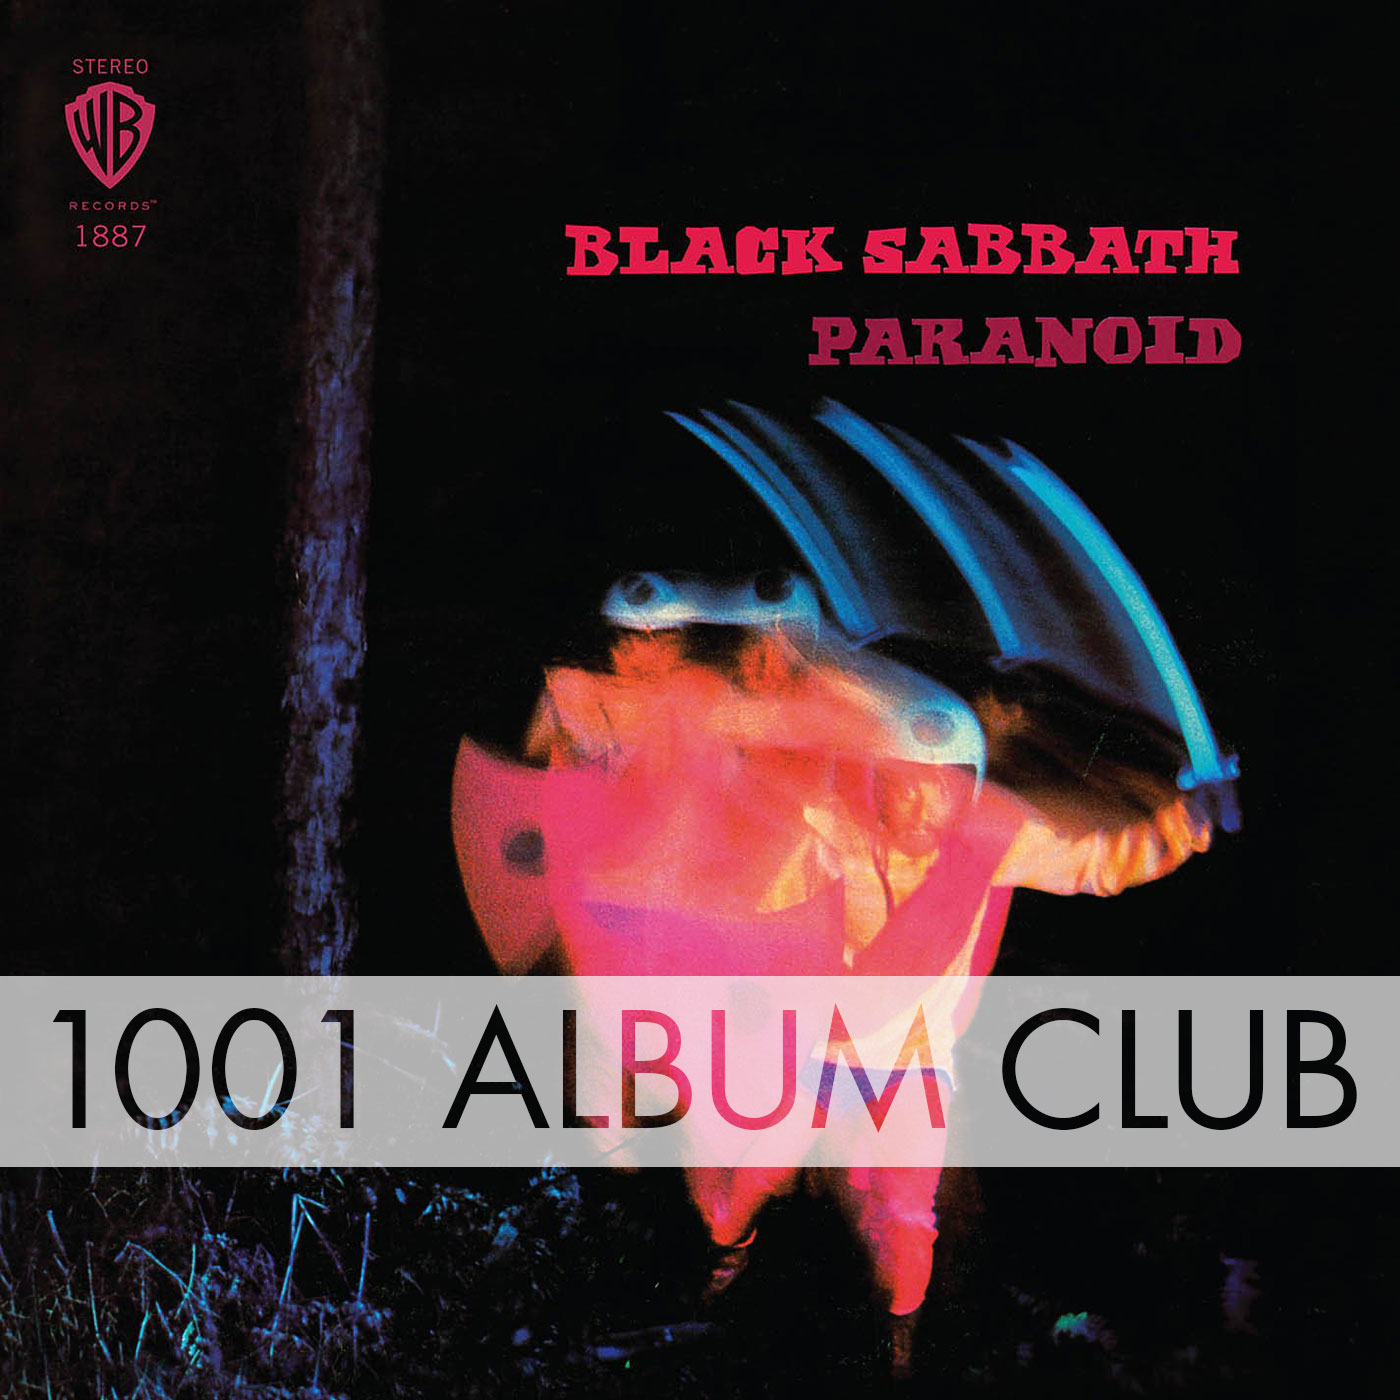 185 Black Sabbath Paranoid 1001 Album Club